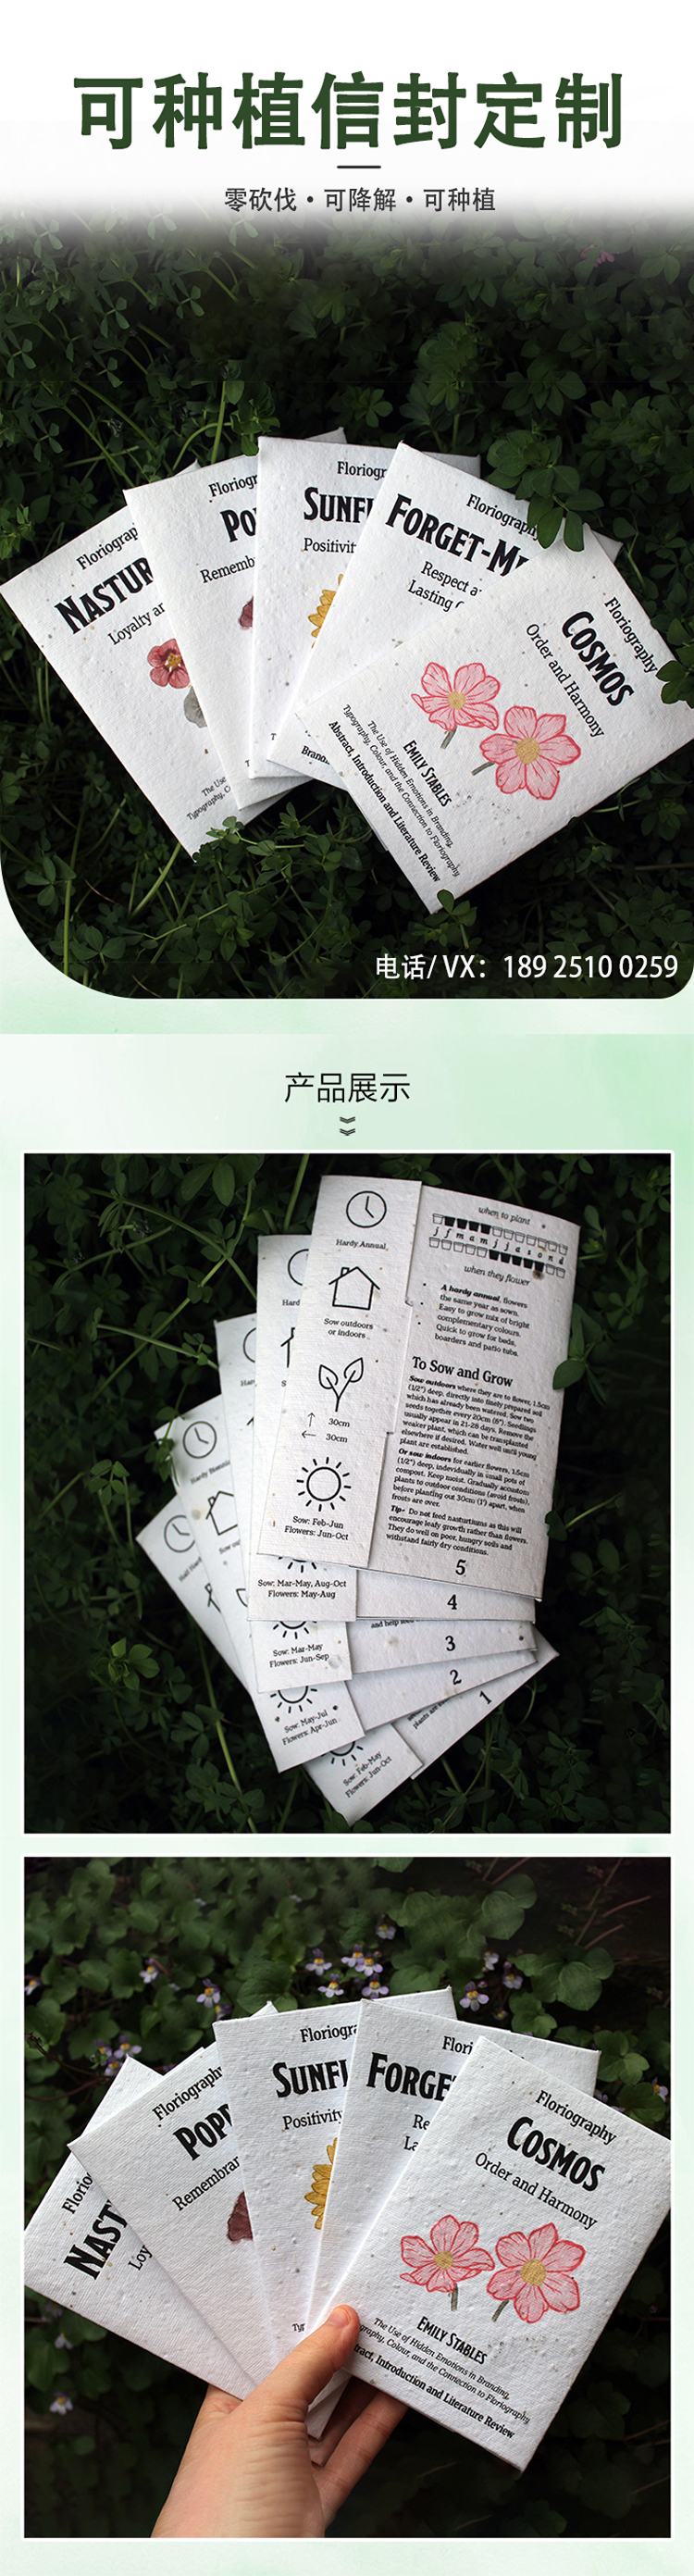 种子纸信封-中文.jpg